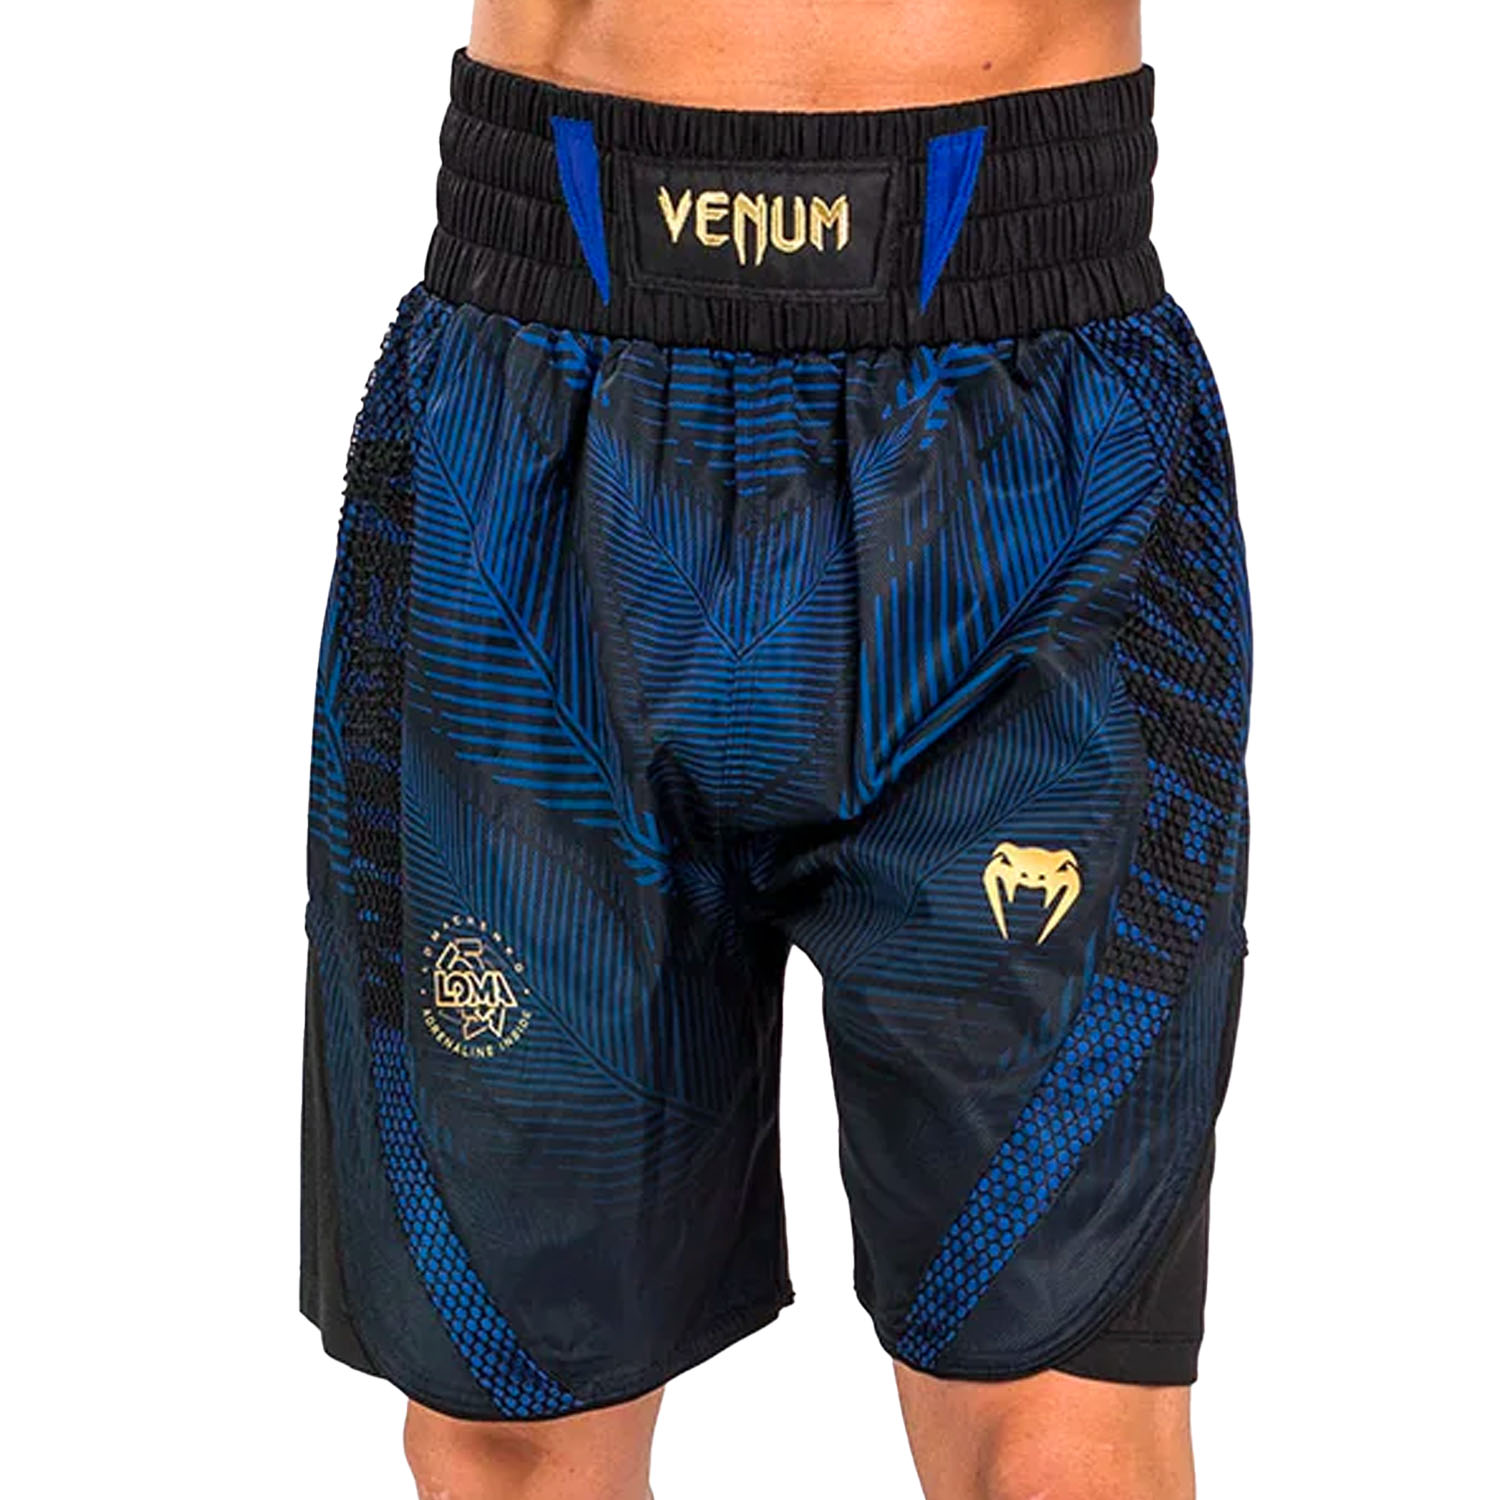 VENUM Boxing Pants, Phantom Loma, black-blue